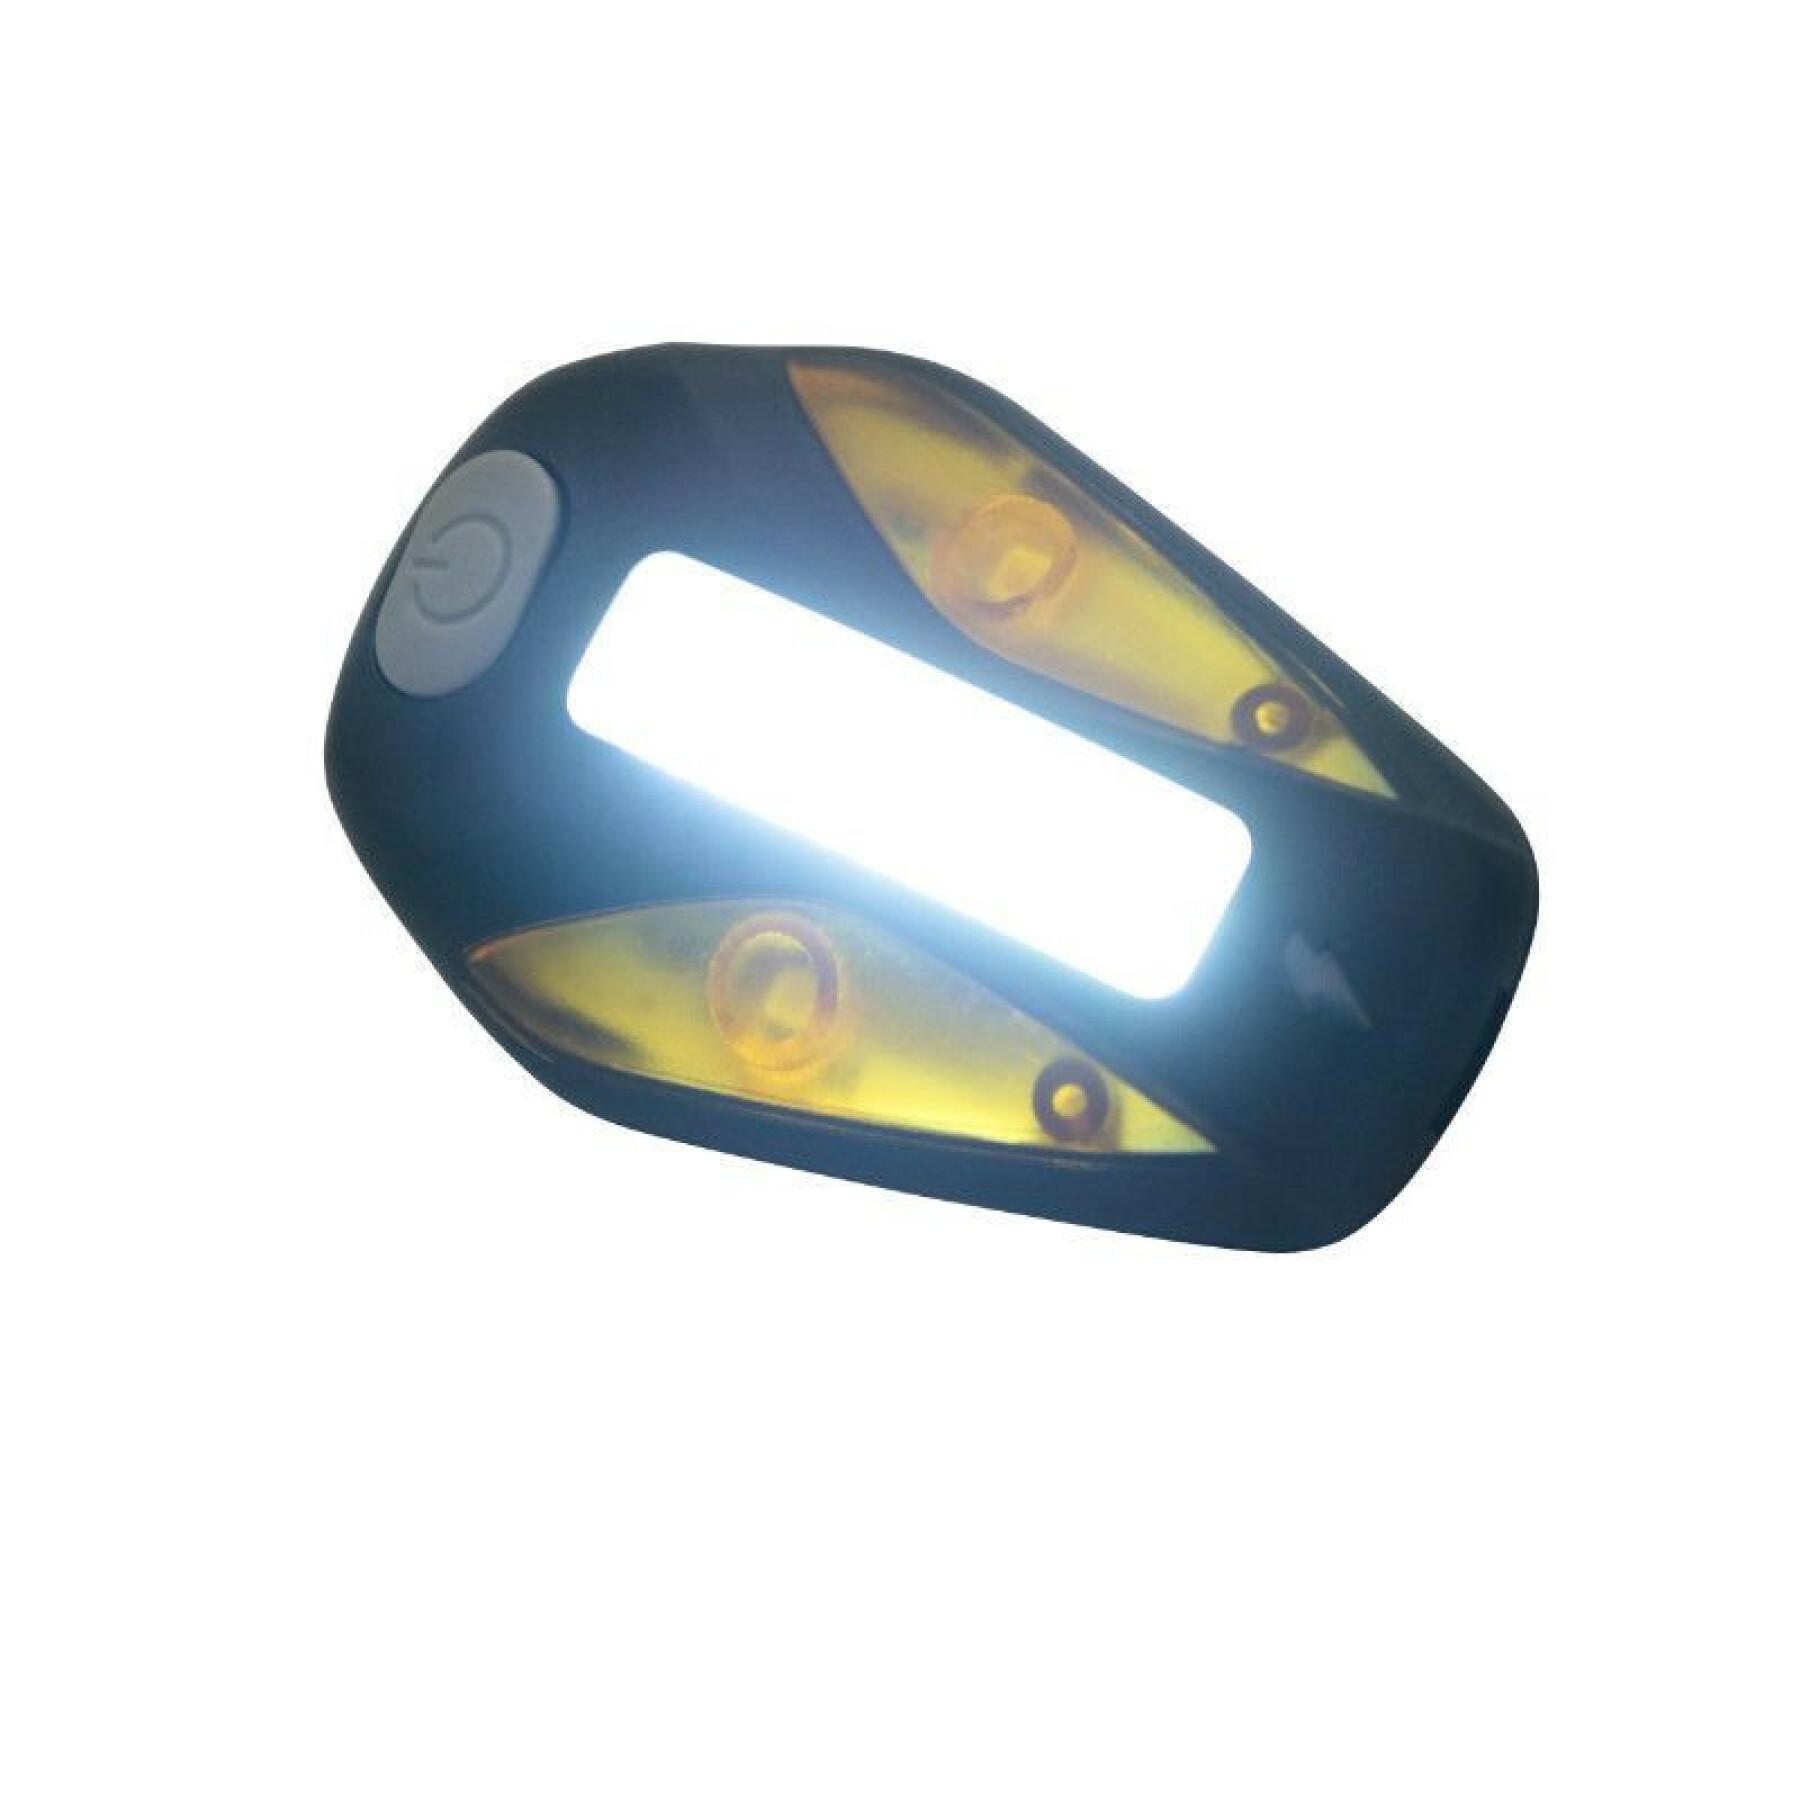 iluminación del manillar delantero o trasero (funciones fijas e intermitentes) con visibilidad lateral Newton Bar Cob Leds 100 Lumens